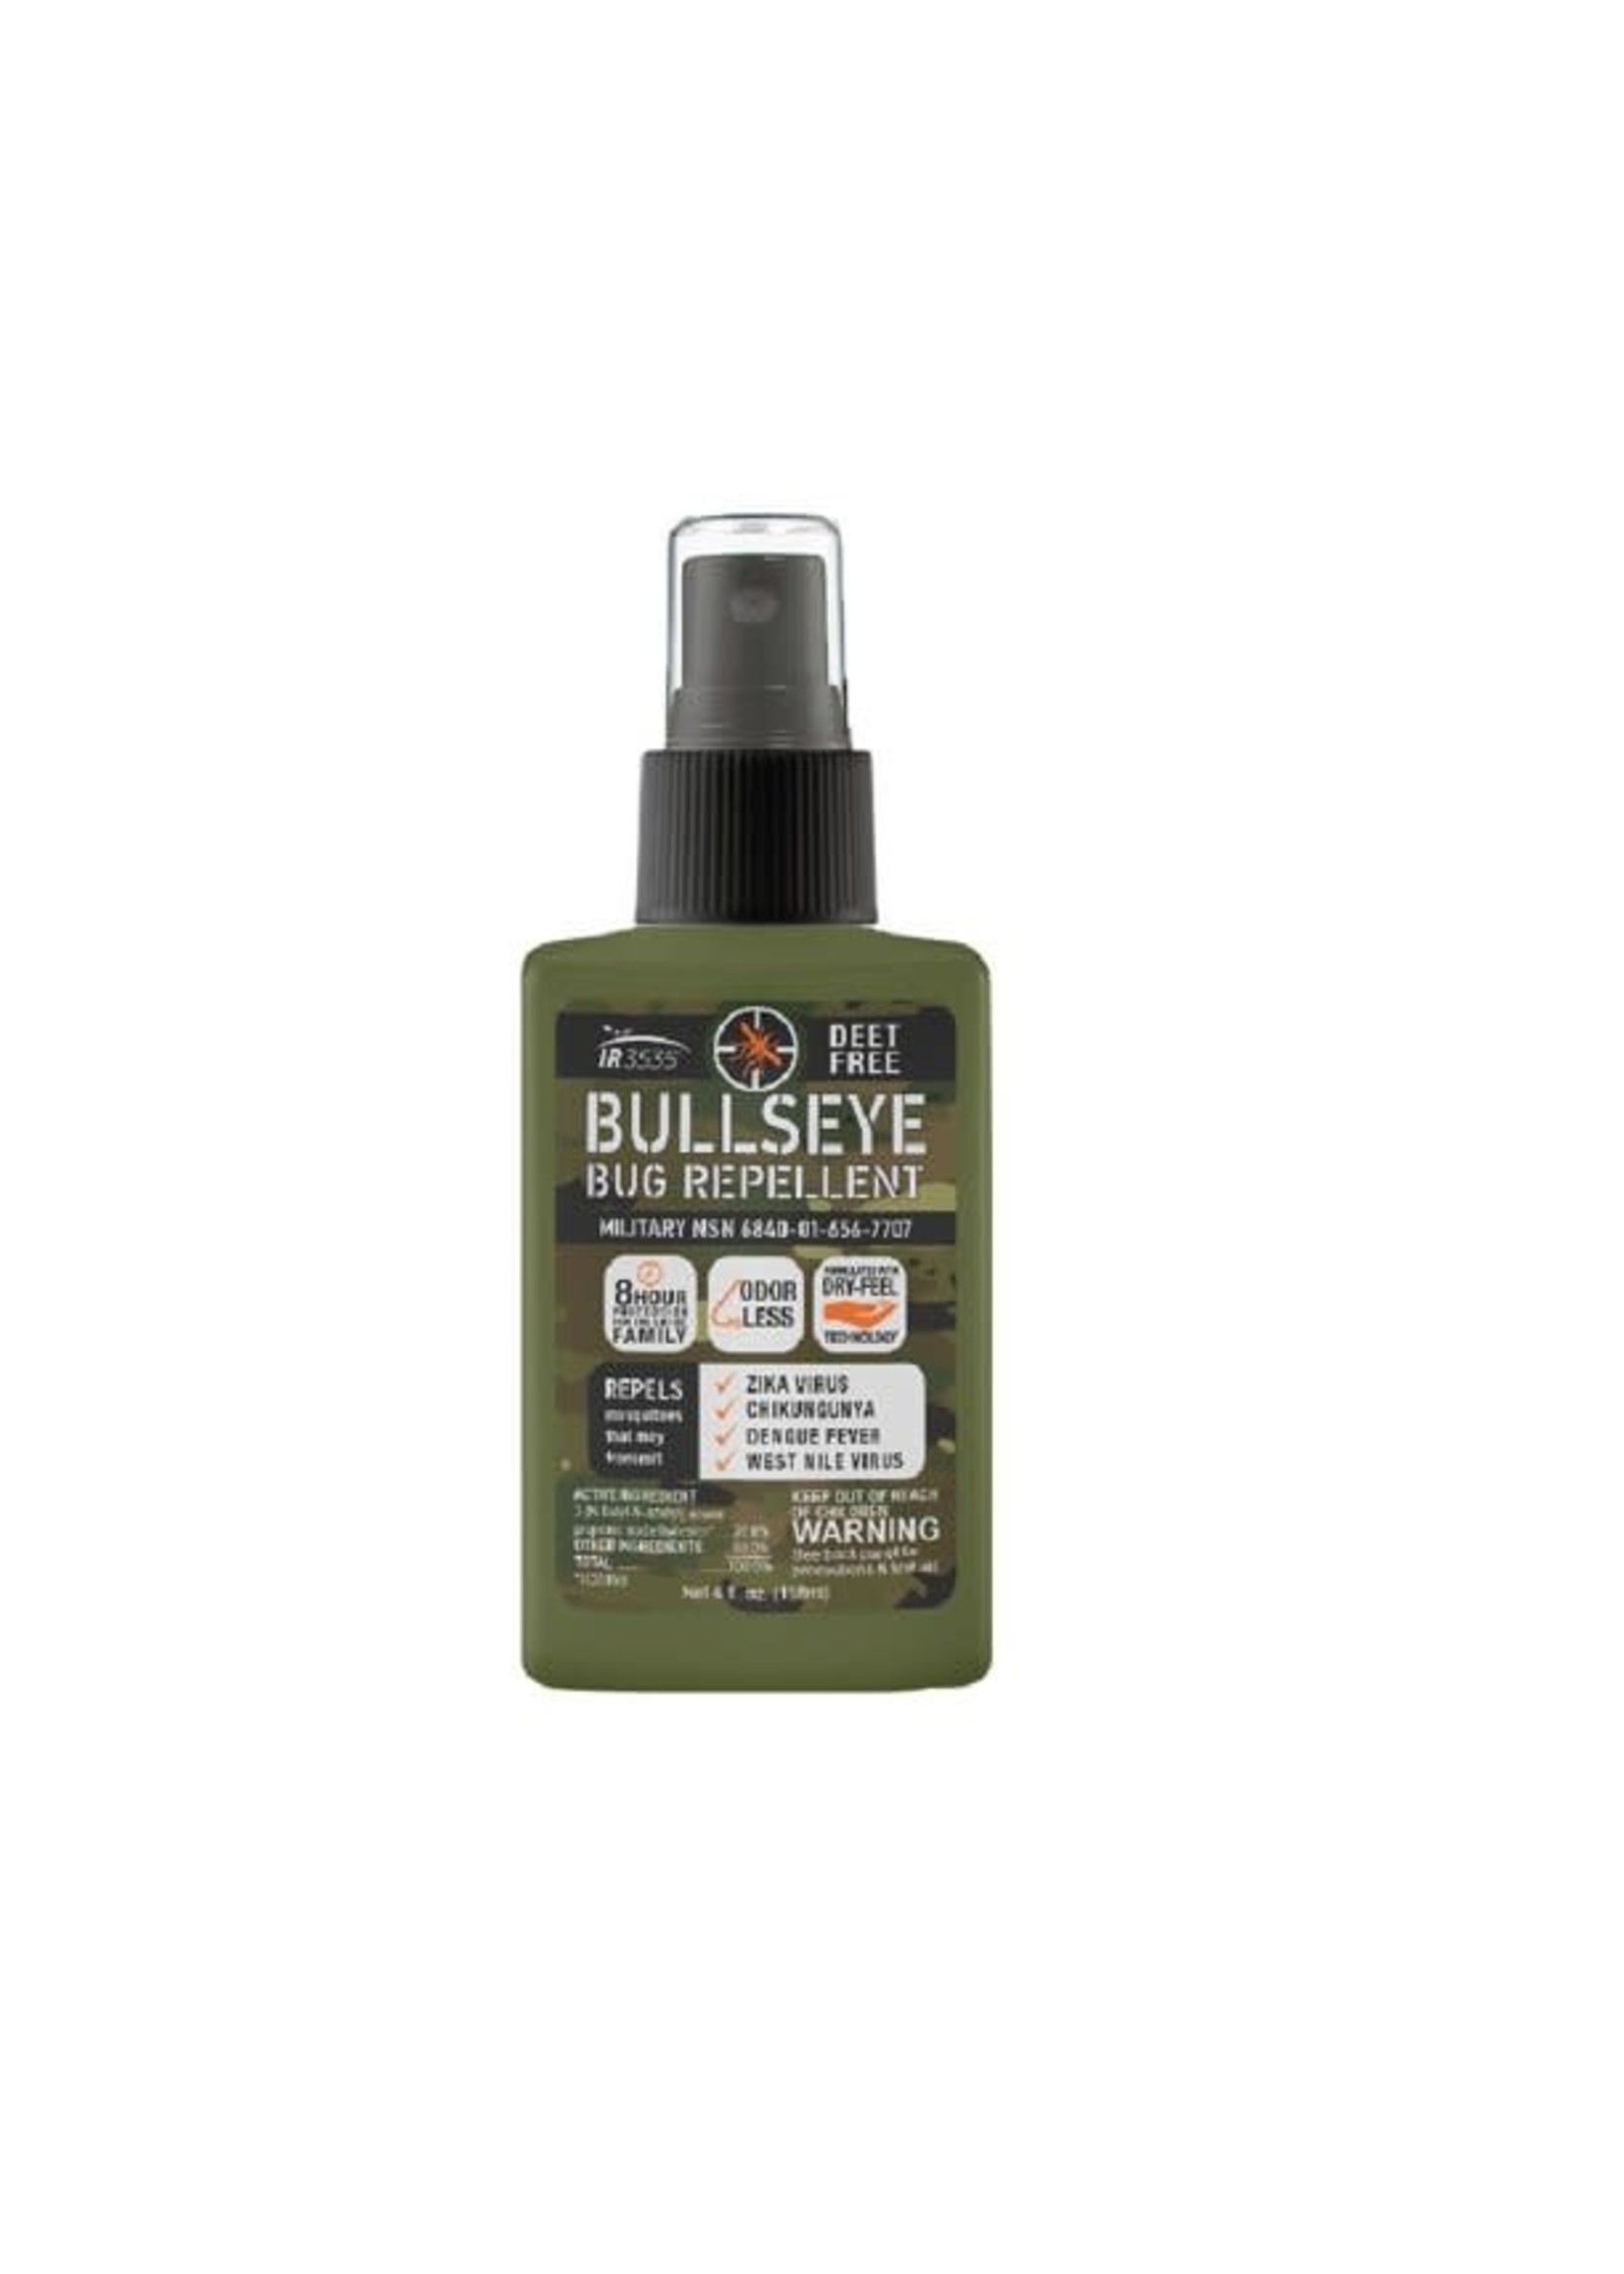 Bullseye Bug Repellent